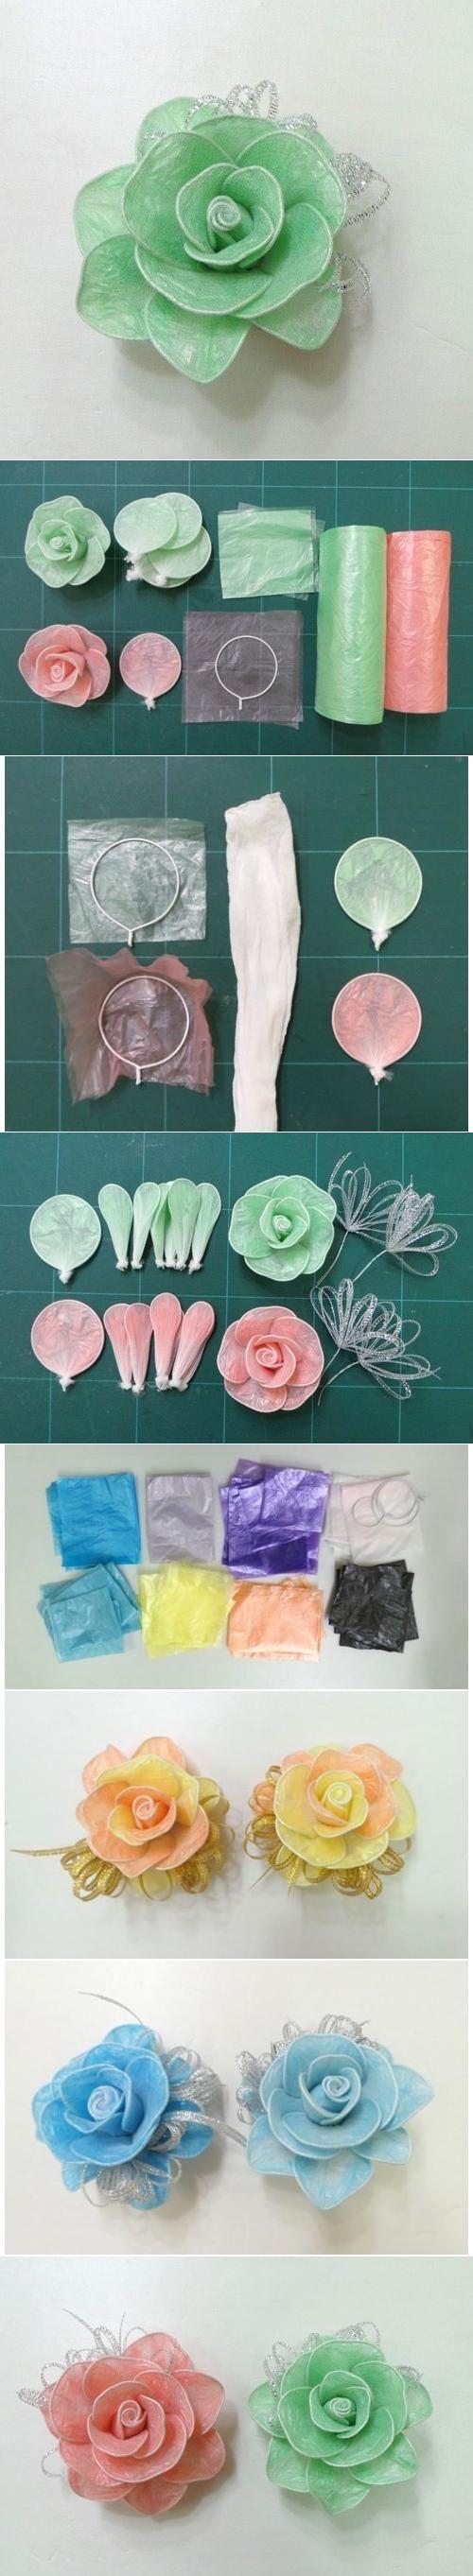 زفاف - DIY Hair Roses Made From Colored Plastic And Twist Ties